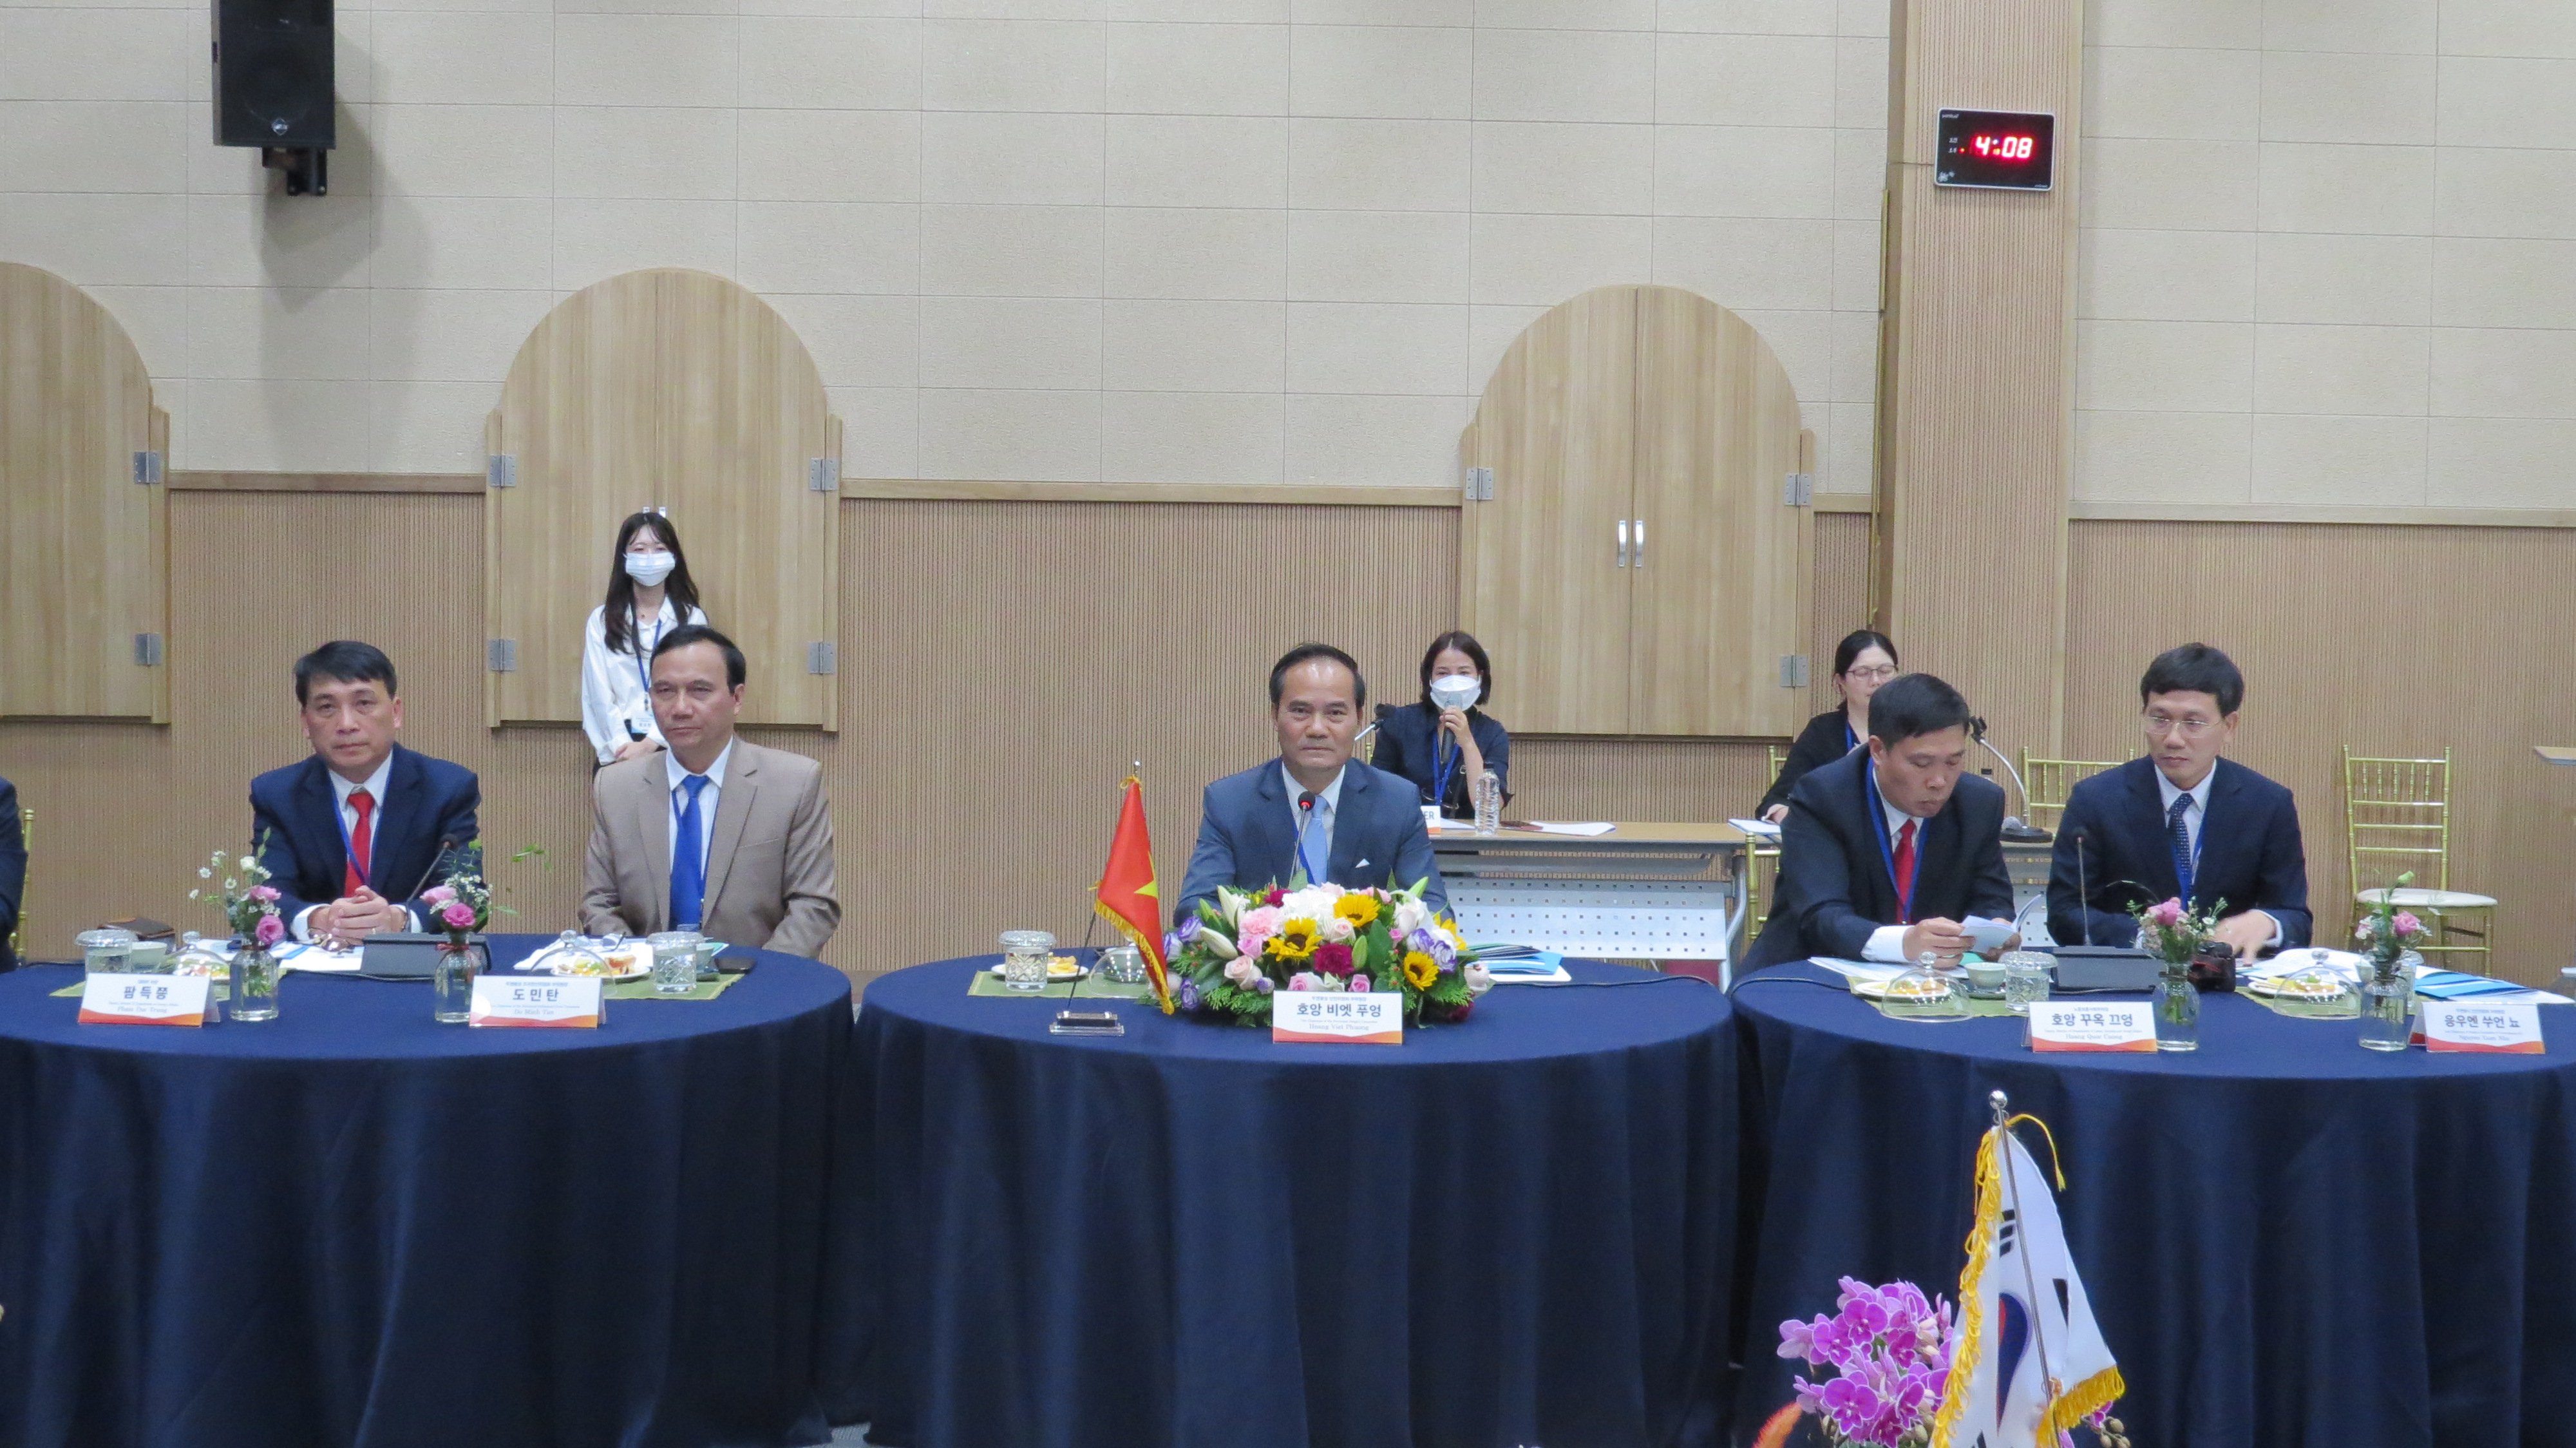 Đồng chí Phó Chủ tịch UBND tỉnh Hoàng Việt Phương và đoàn công tác tỉnh Tuyên Quang tham dự buổi làm việc